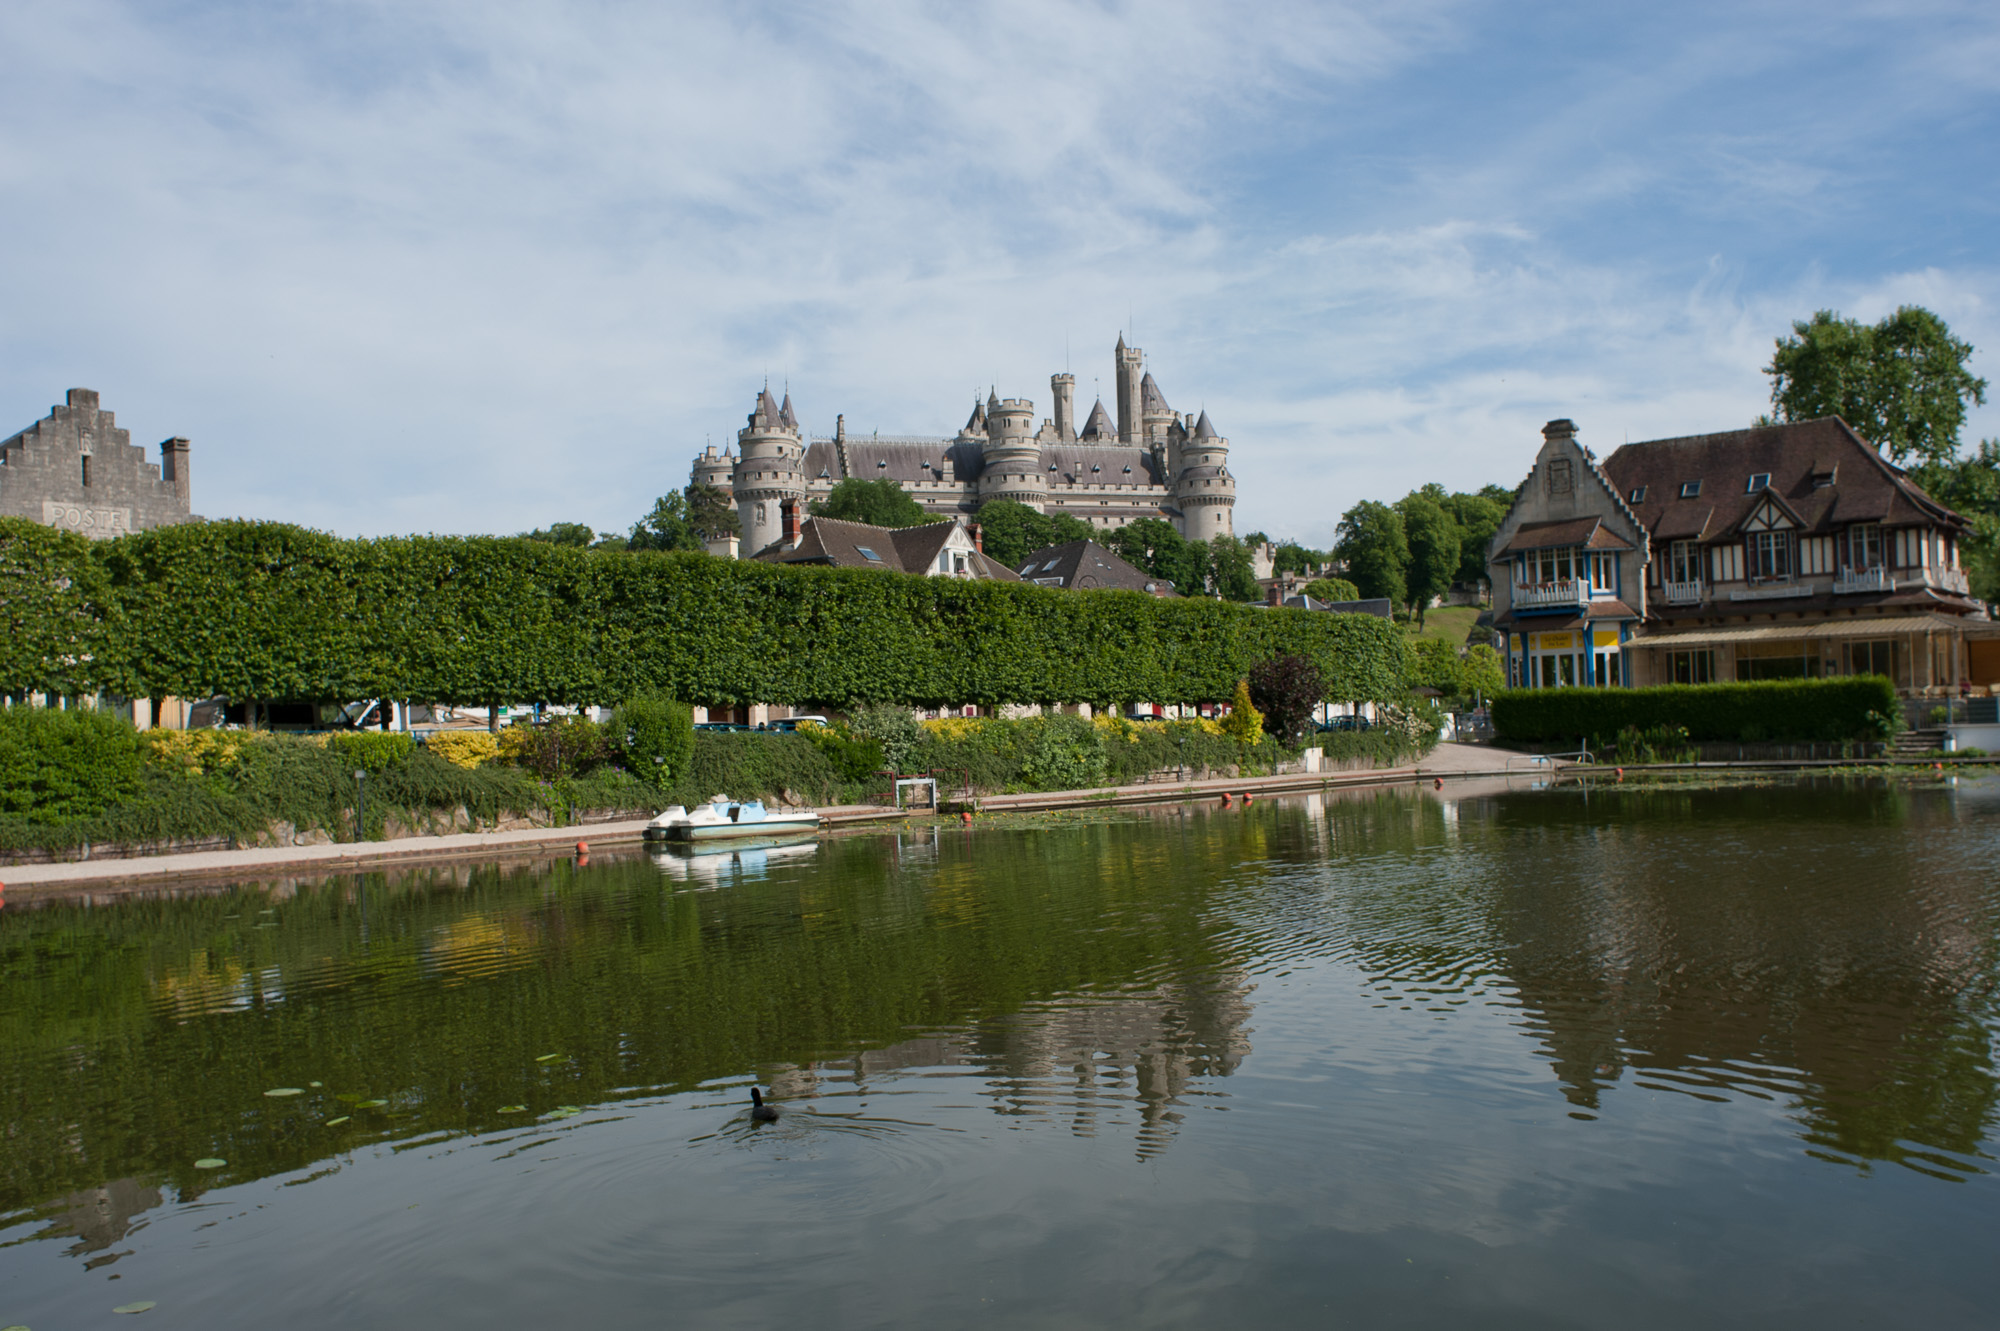 Le Château, construit au XIV ème siècle, sous Louis d'Orléans, a été remanié par Viollet-le-Duc en 1850. L'ornementation des façades, s'apparente à des décors de théâtre, avec ses sculptures d'animaux fantastiques., a été remanié par Viollet-le-Duc en 1850. L'édifice se reflète dans les eaux du lac.